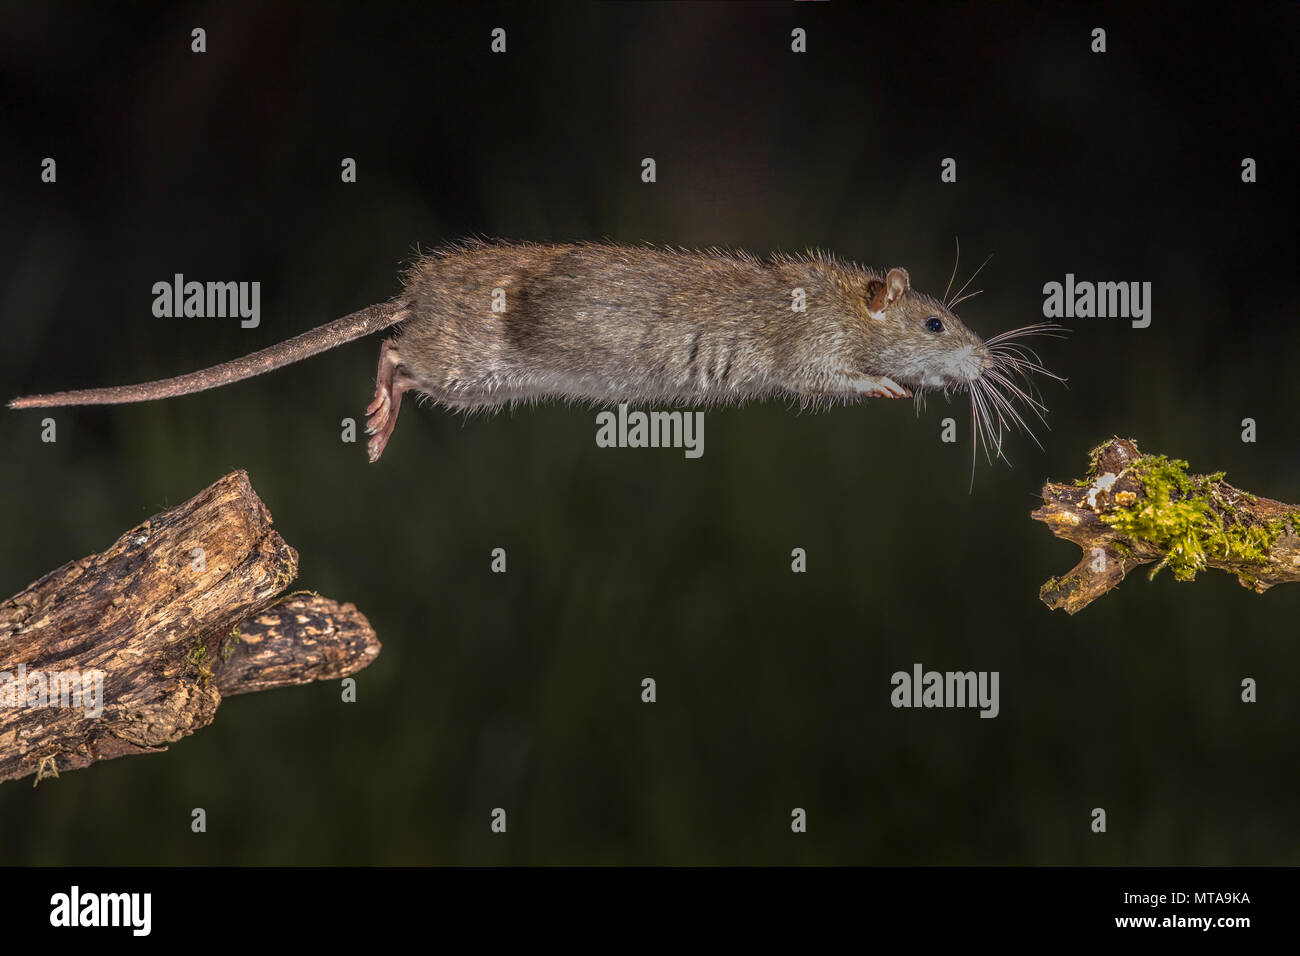 Wild marrone (ratto Rattus norvegicus) jumping dal log di notte. Fotografie ad alta velocità immagine Foto Stock